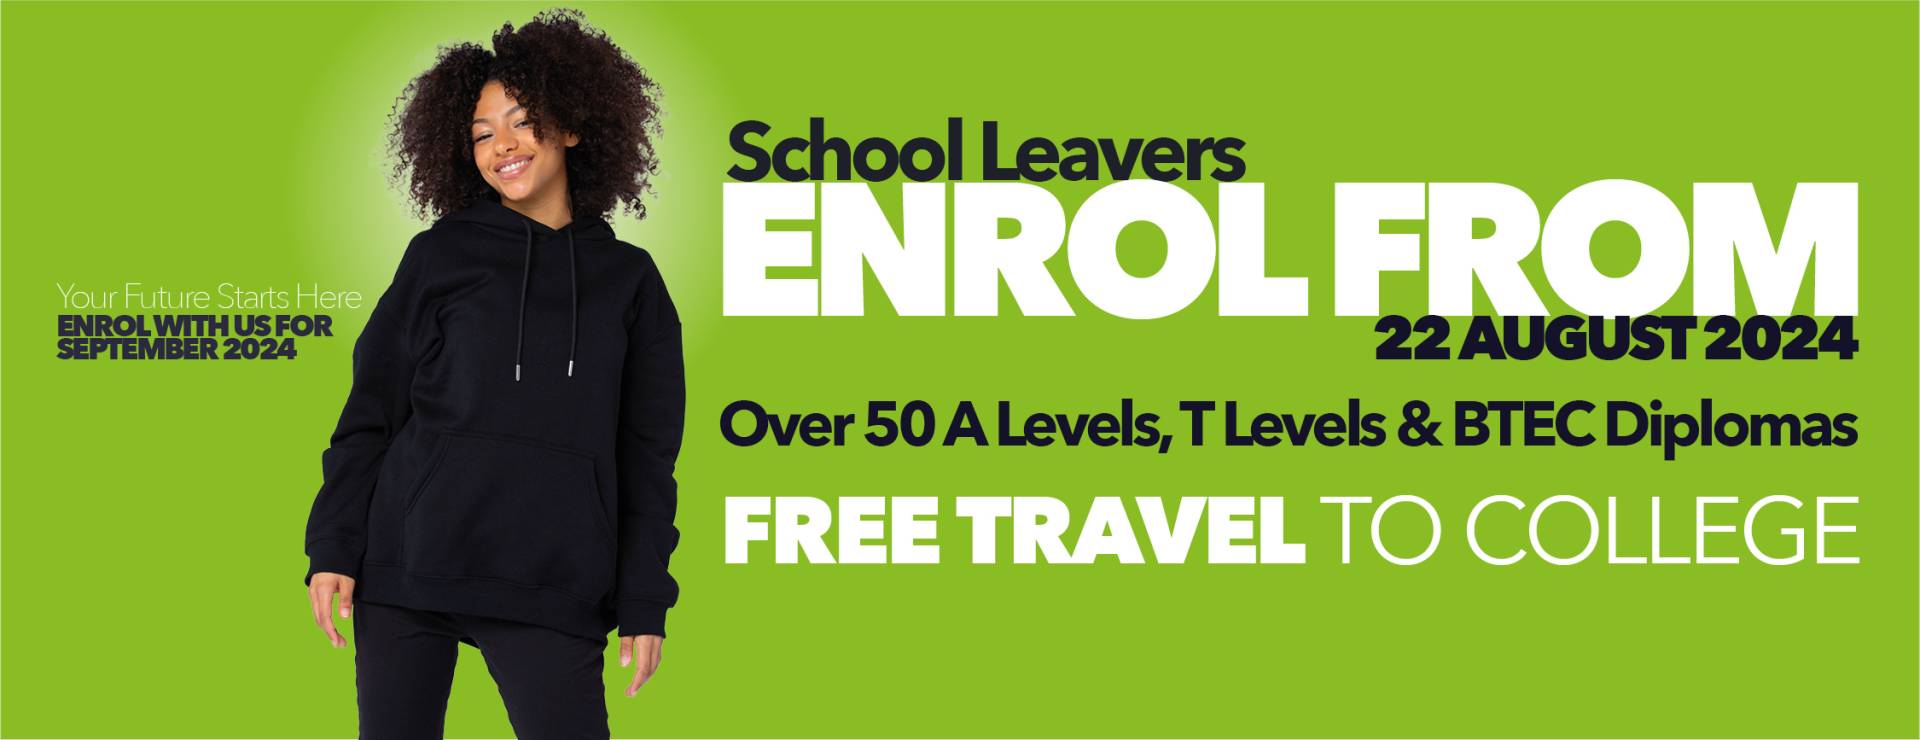 School Leavers Enrol from 22 August